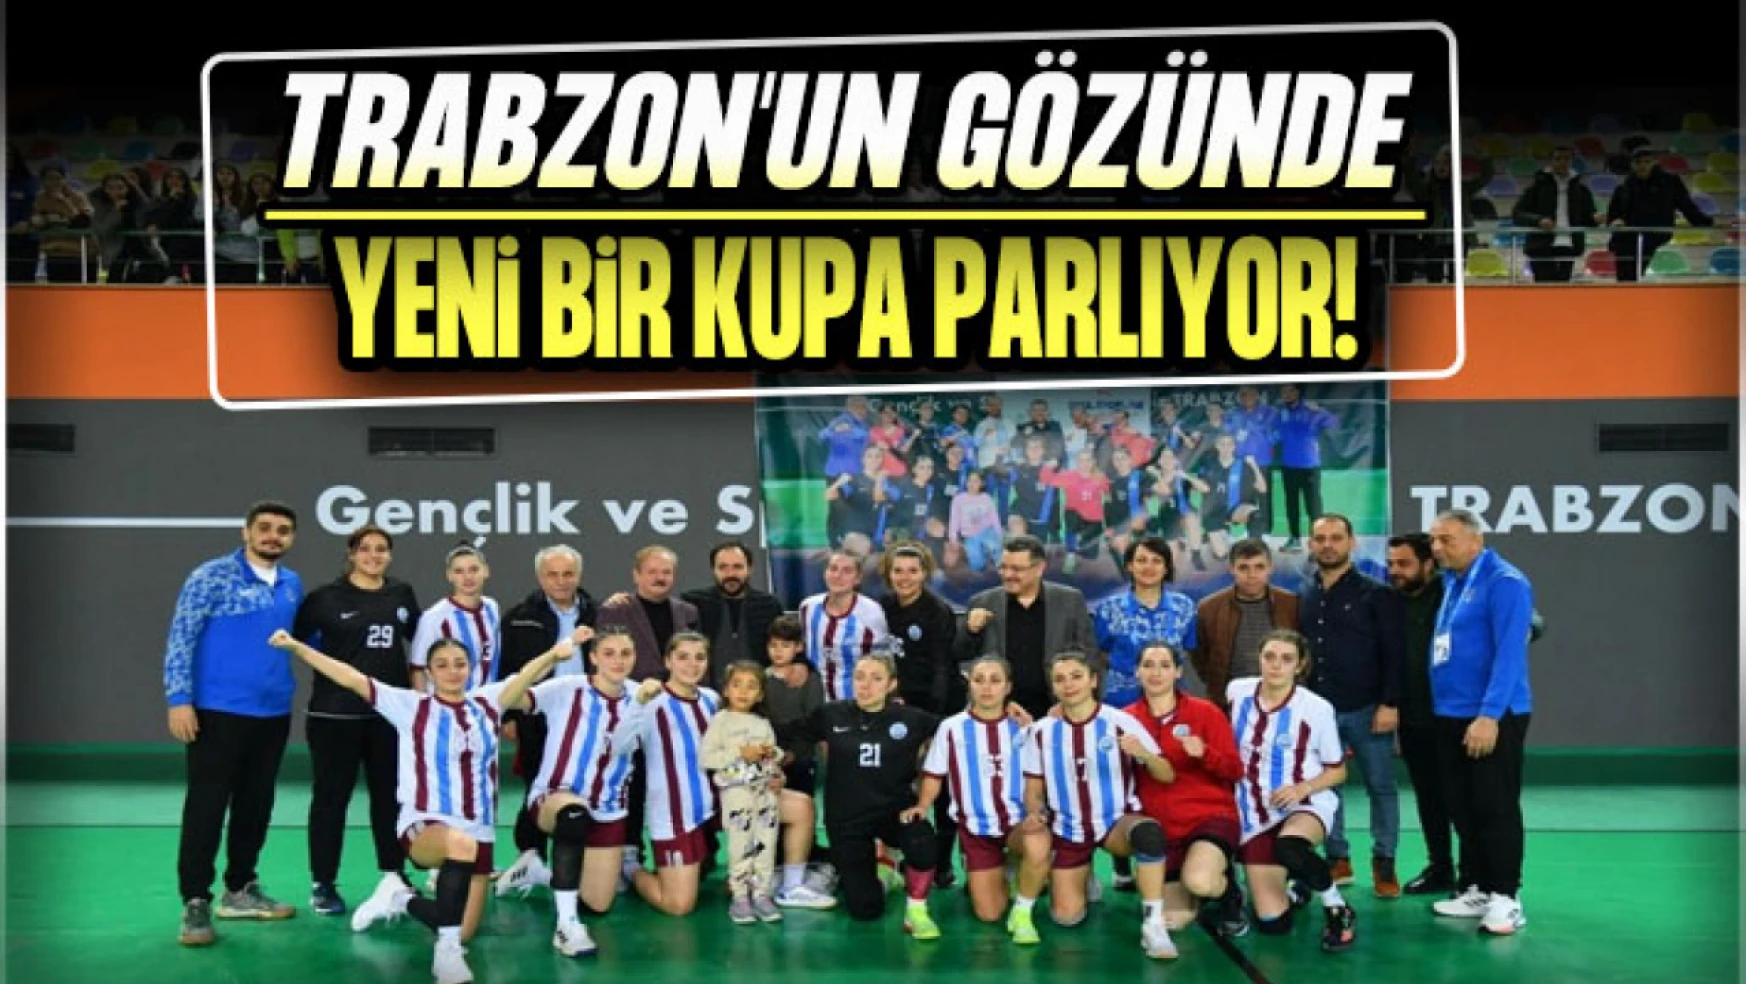 Trabzon'un Gözünde Yeni Bir Kupa Parlıyor!